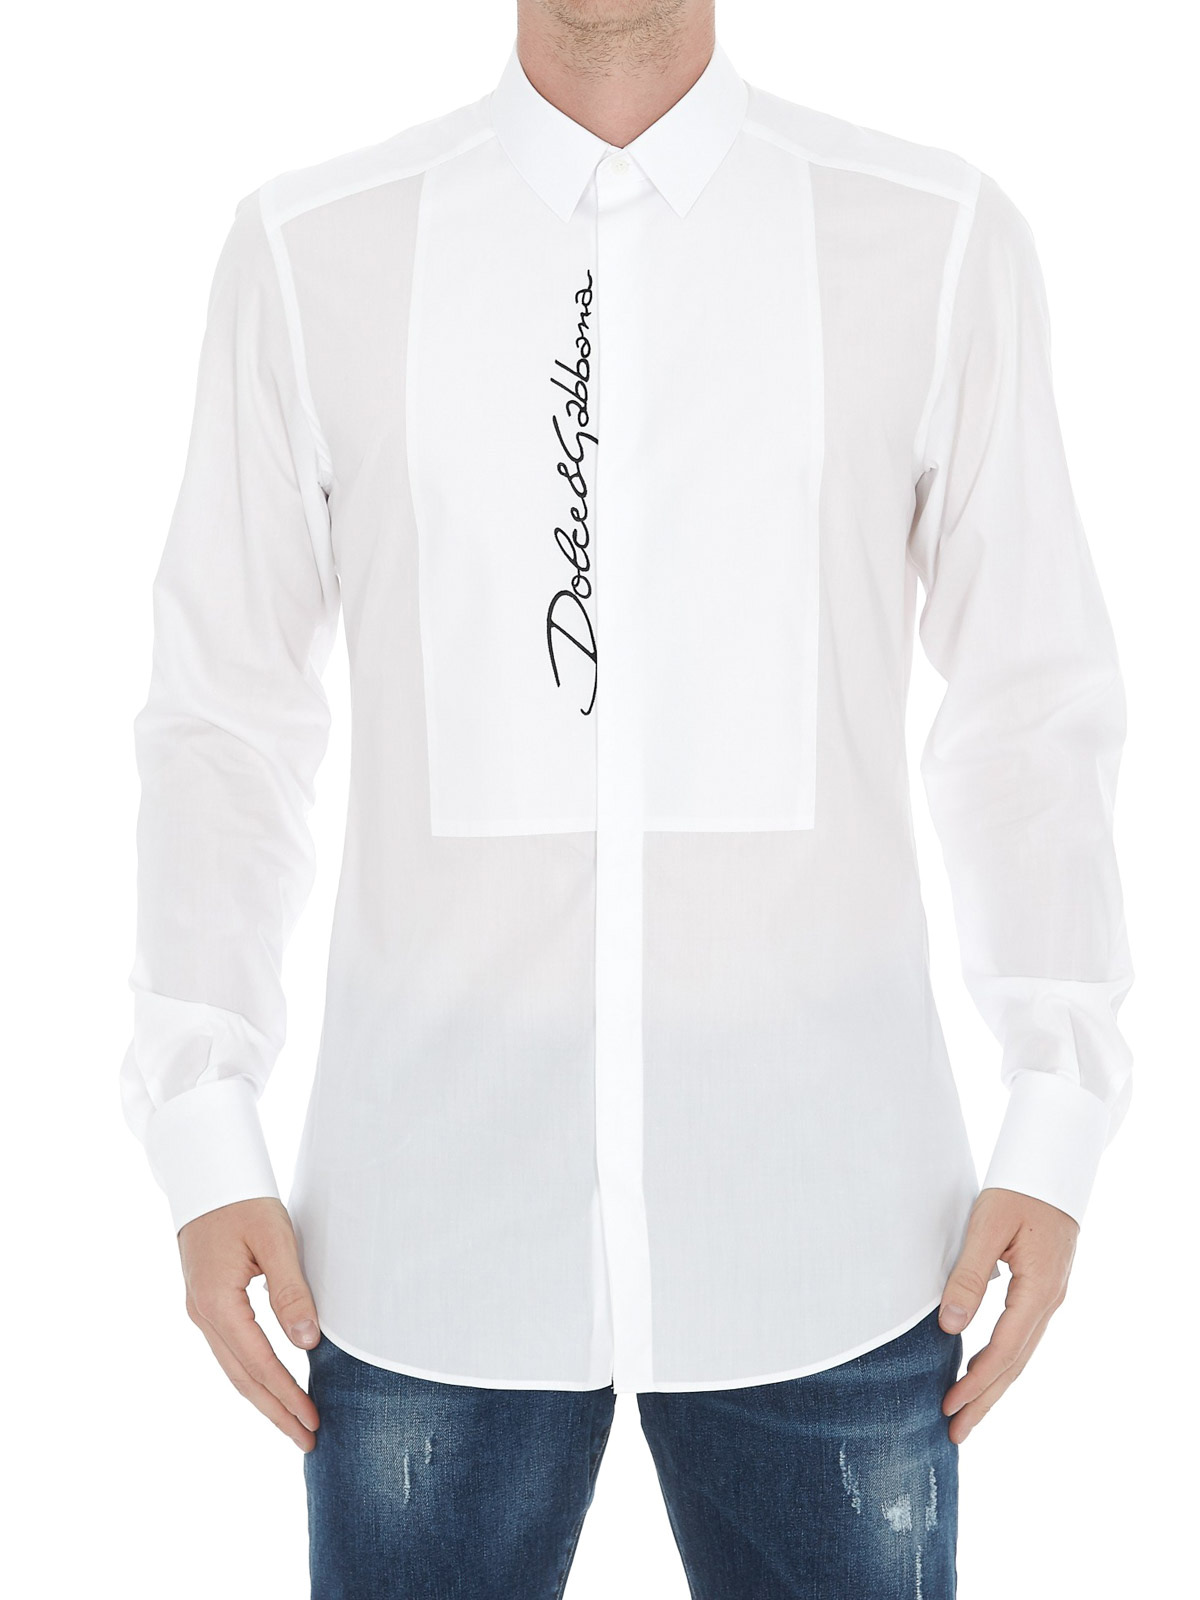 dolce gabbana white shirt